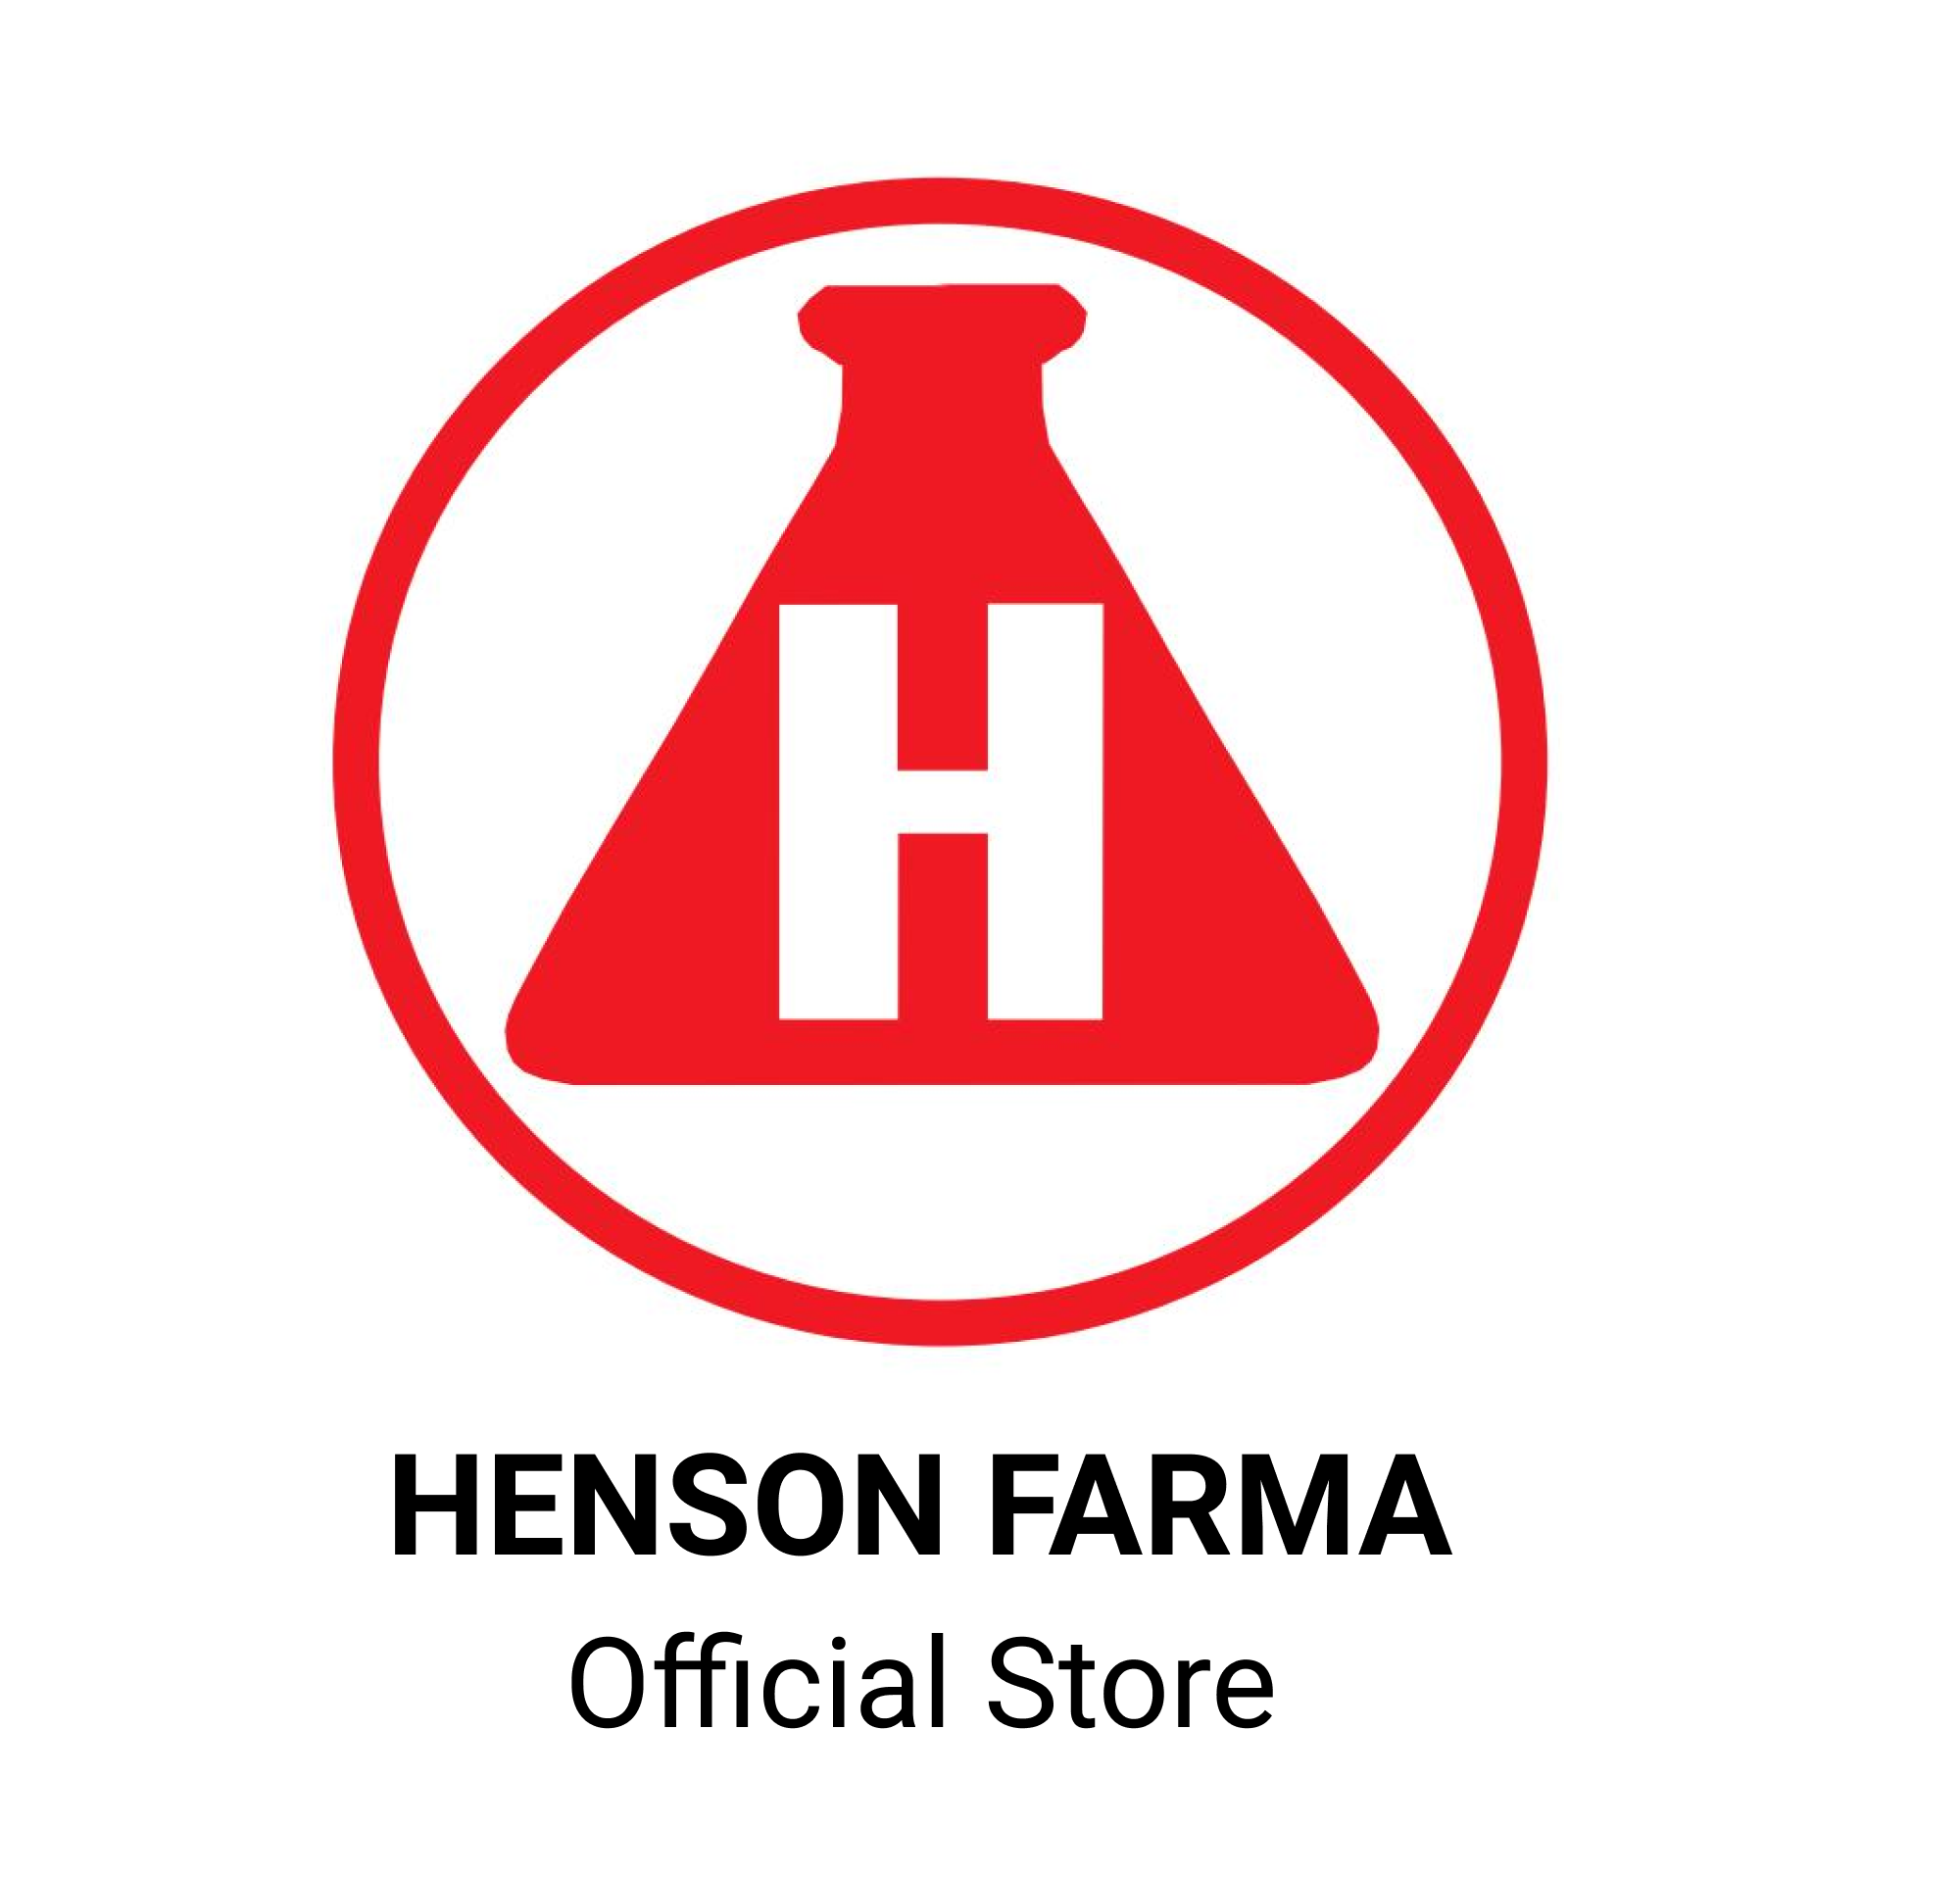 Henson Farma Store